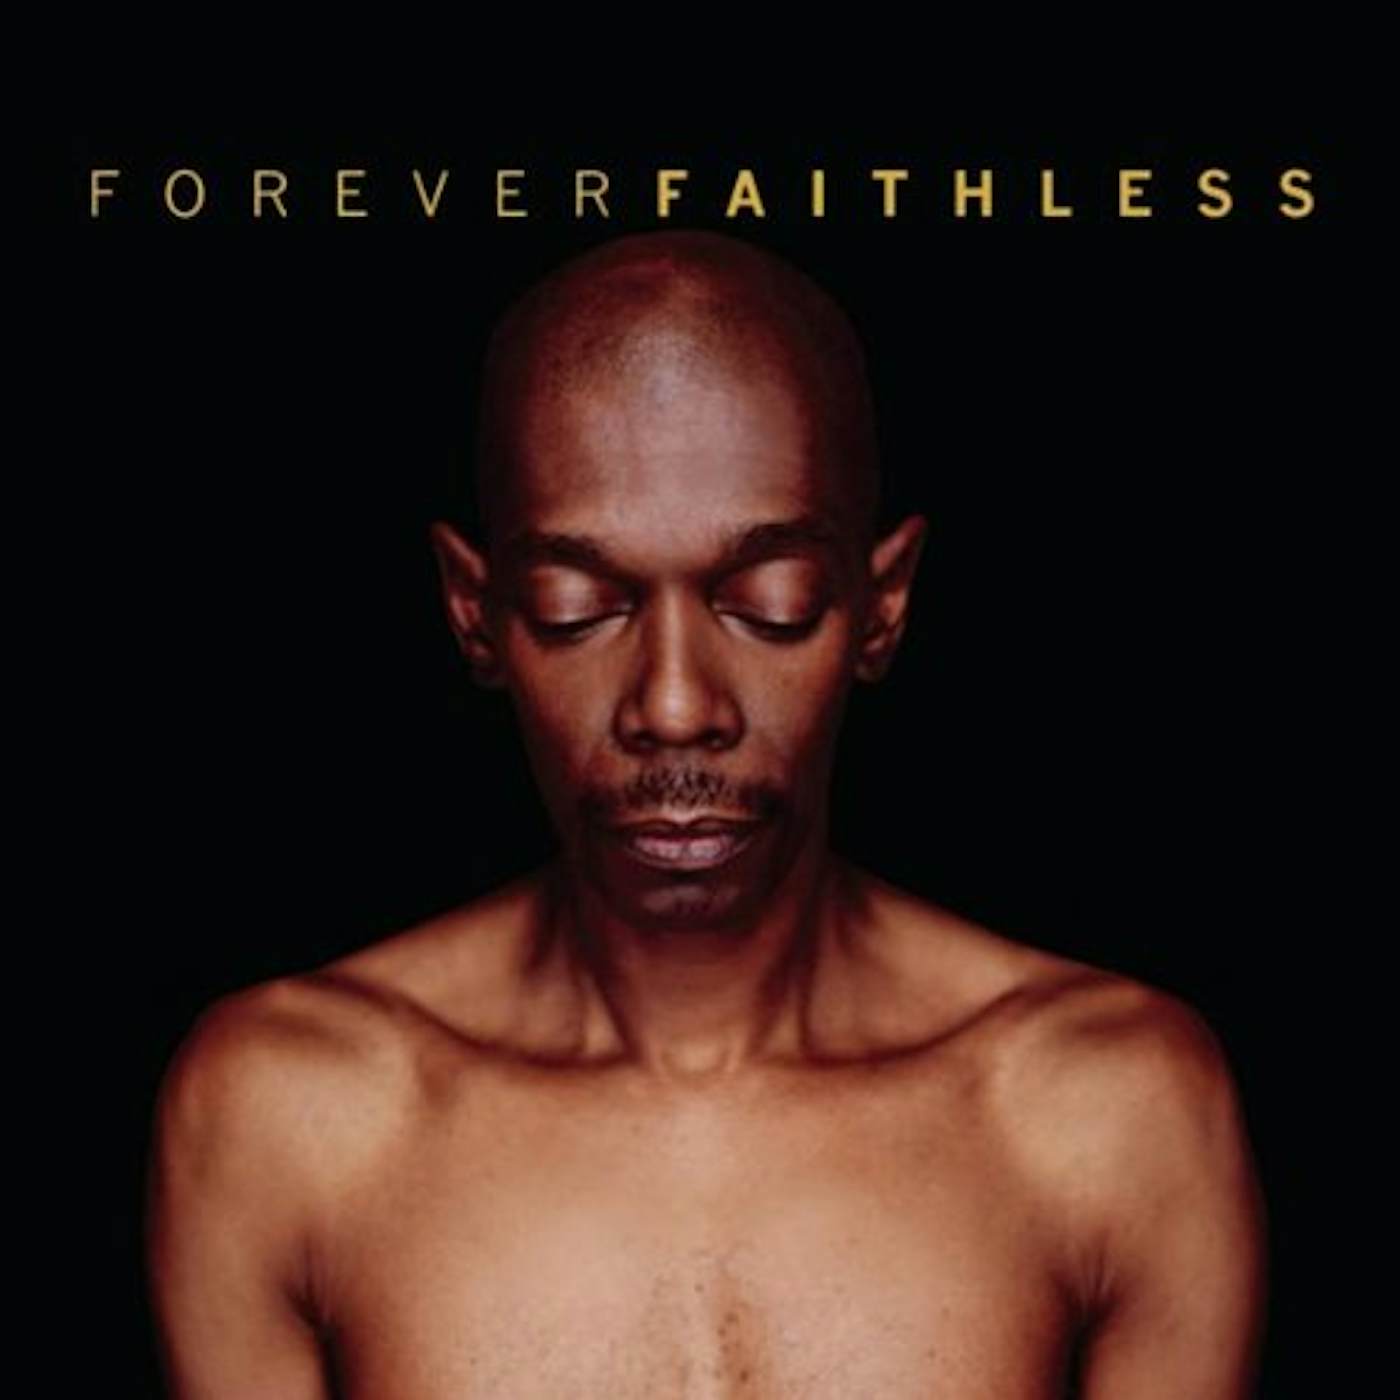 FOREVER FAITHLESS: GREATEST HITS CD